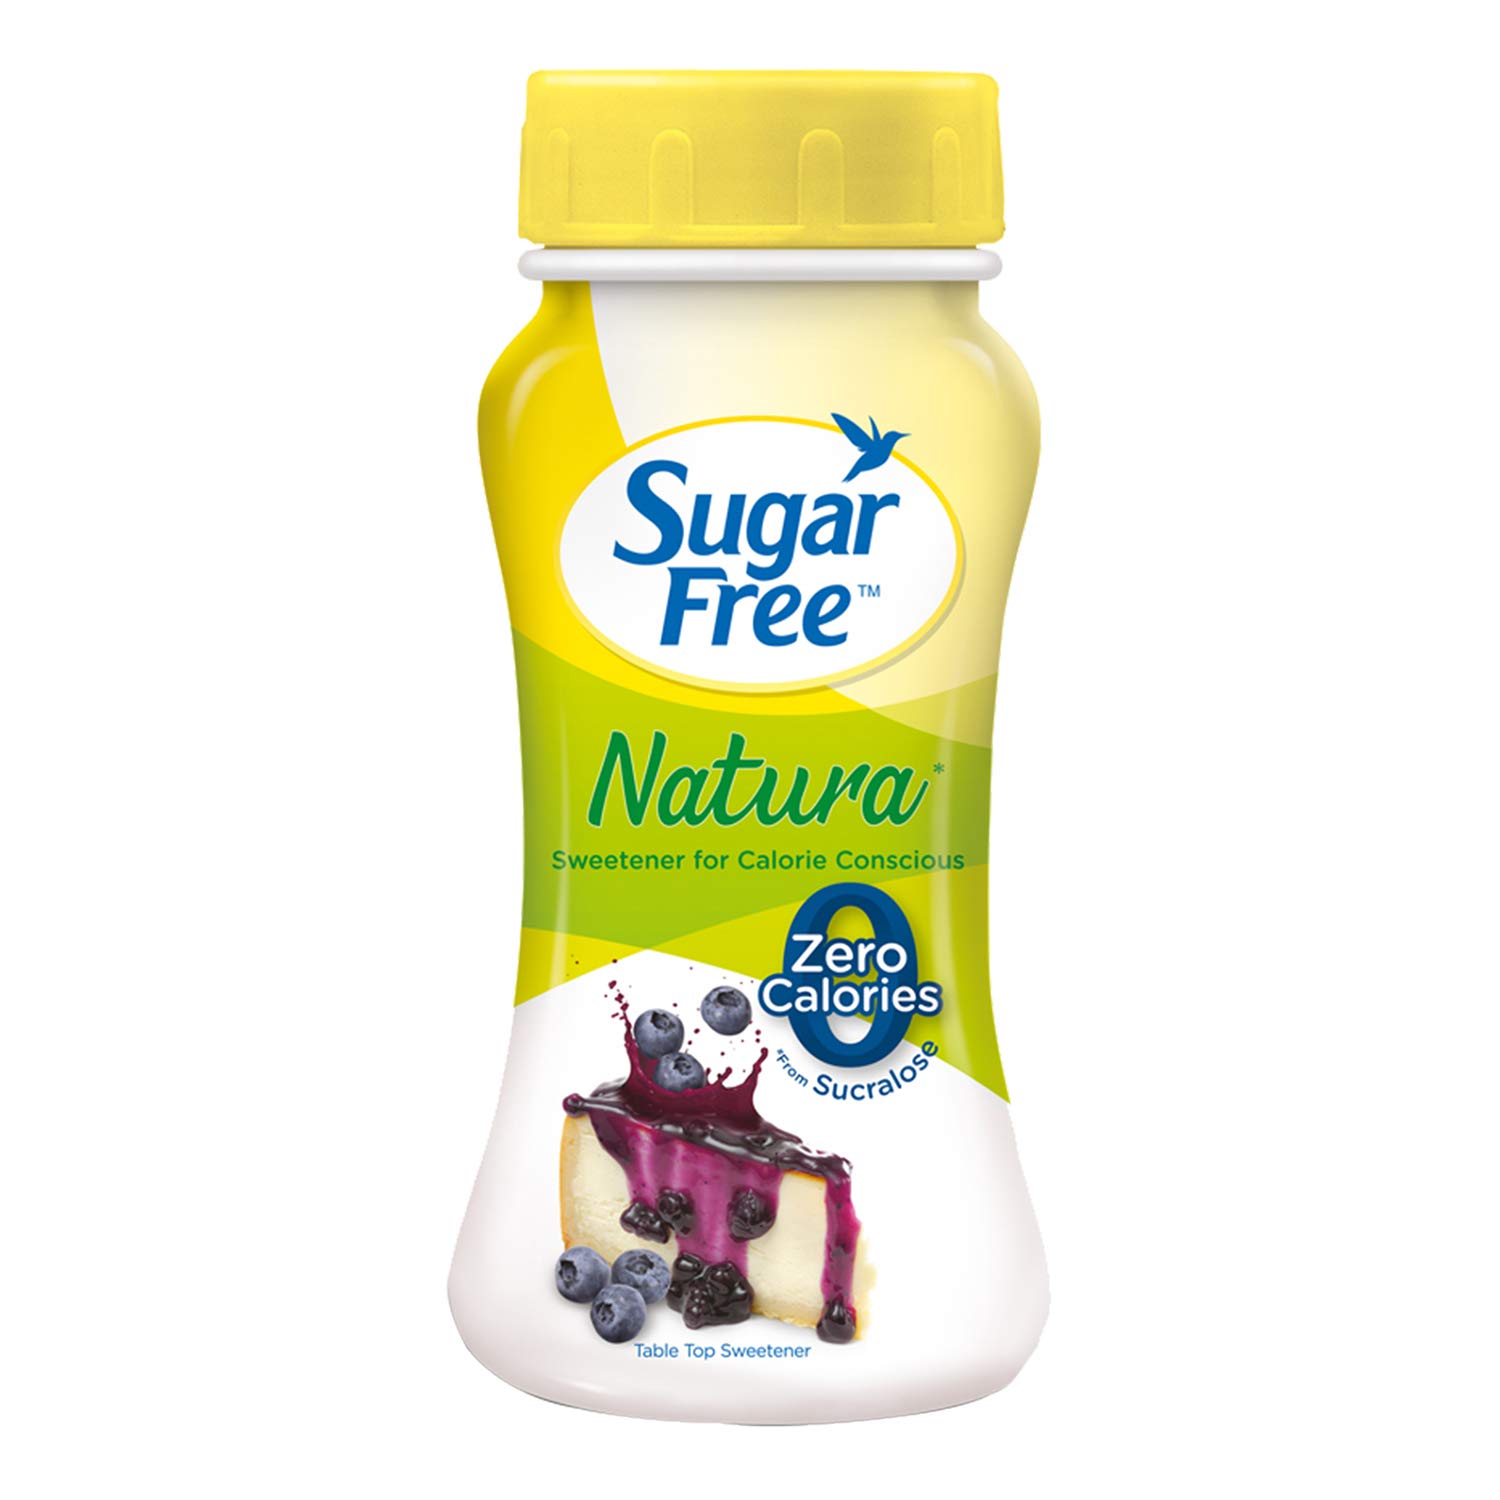 Sugar Free Natura Low Calorie Sweetner Image